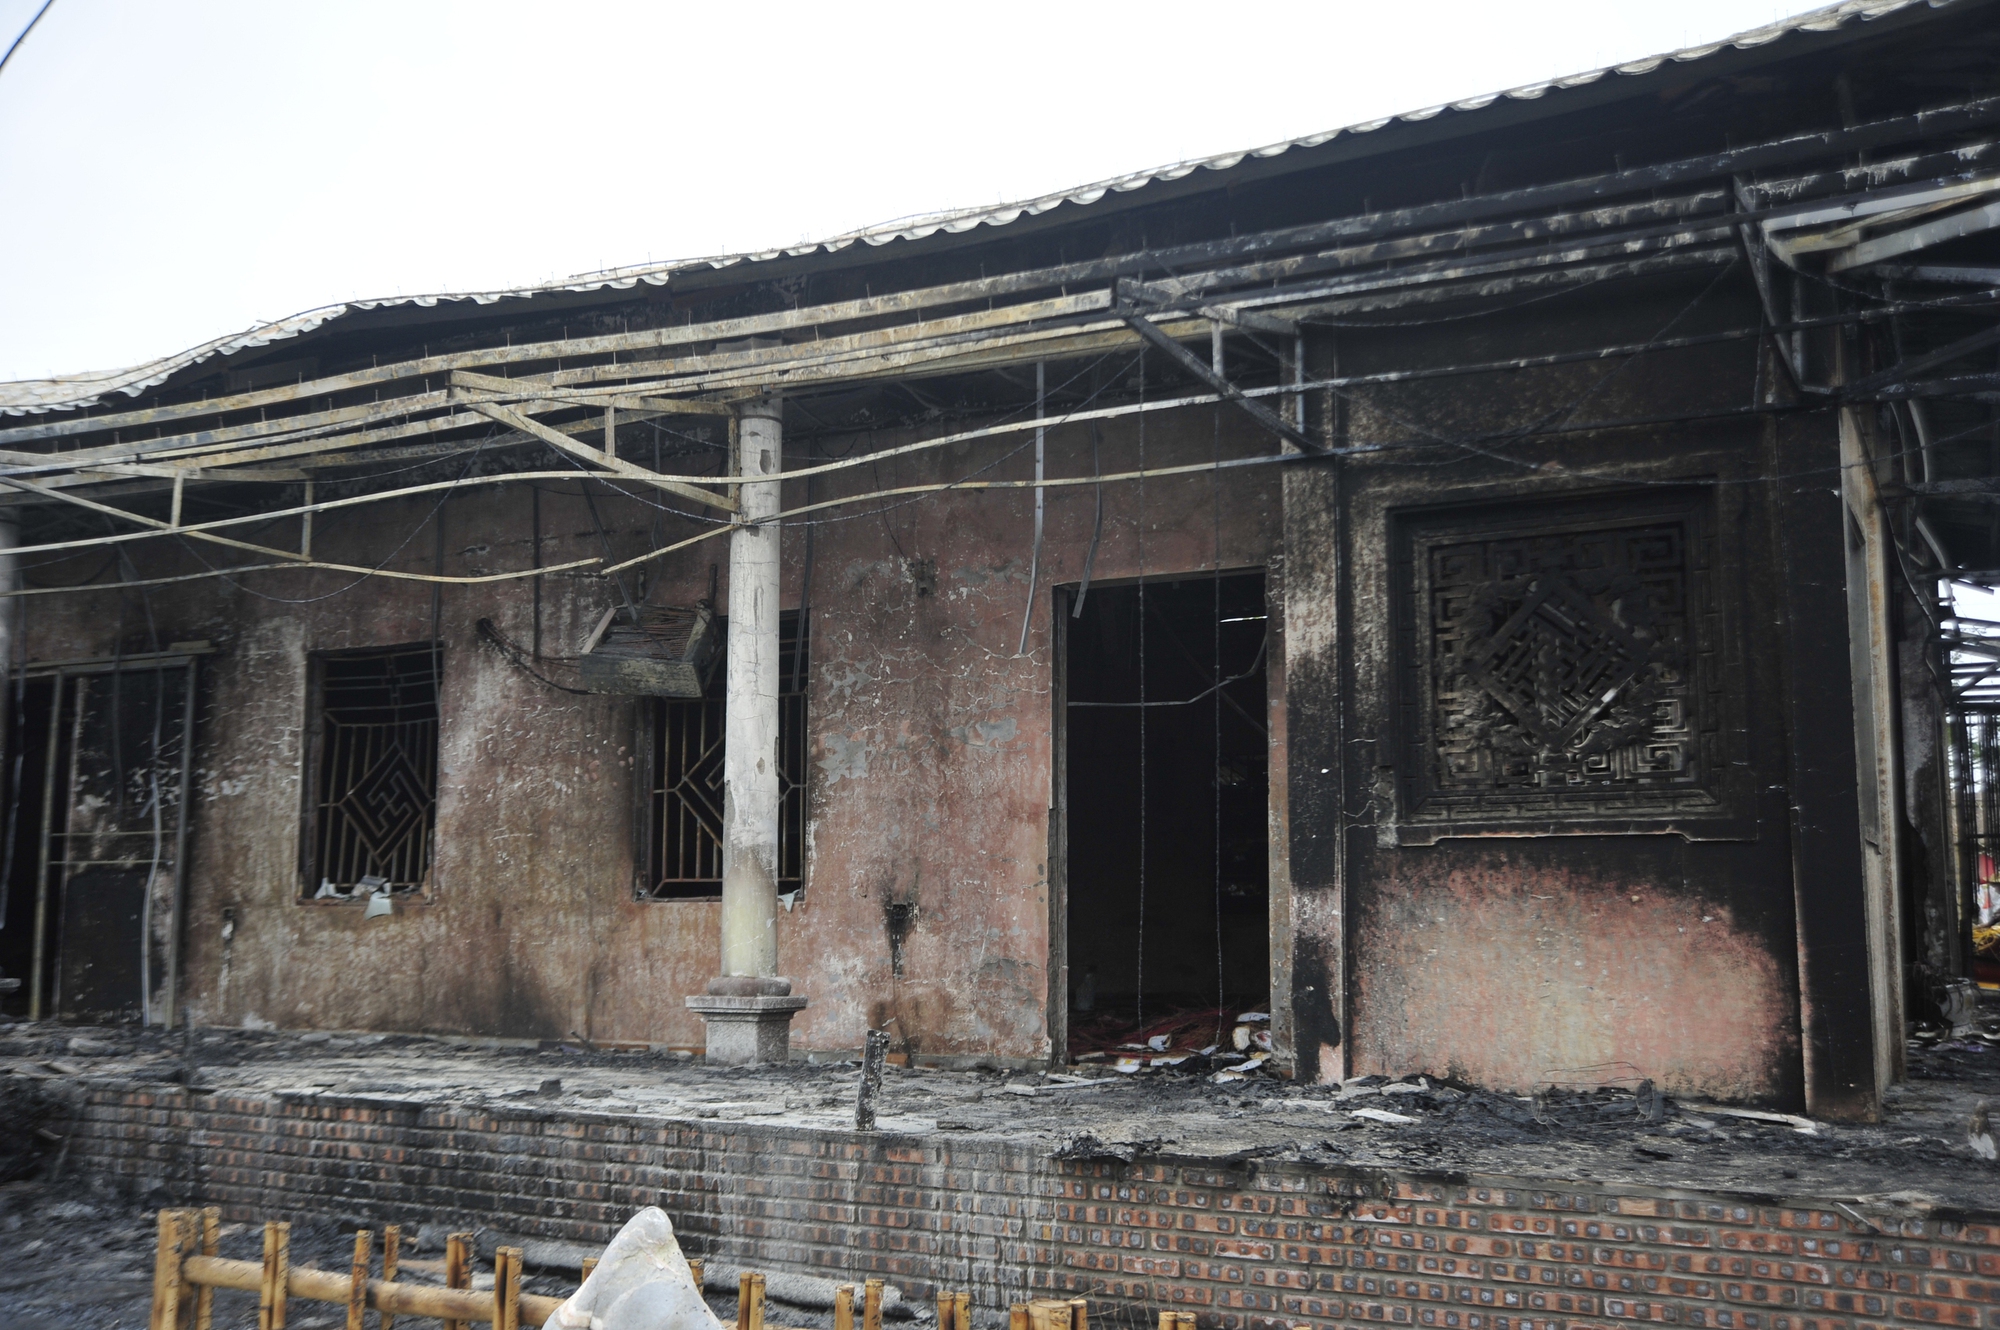 Trao với chúng tôi, trụ trì chùa Phật Quang cho biết, vụ cháy xảy ra lúc 16h50 ngày 20/1/2024 tức ngày mùng 10 tháng Chạp năm Quý Mão.